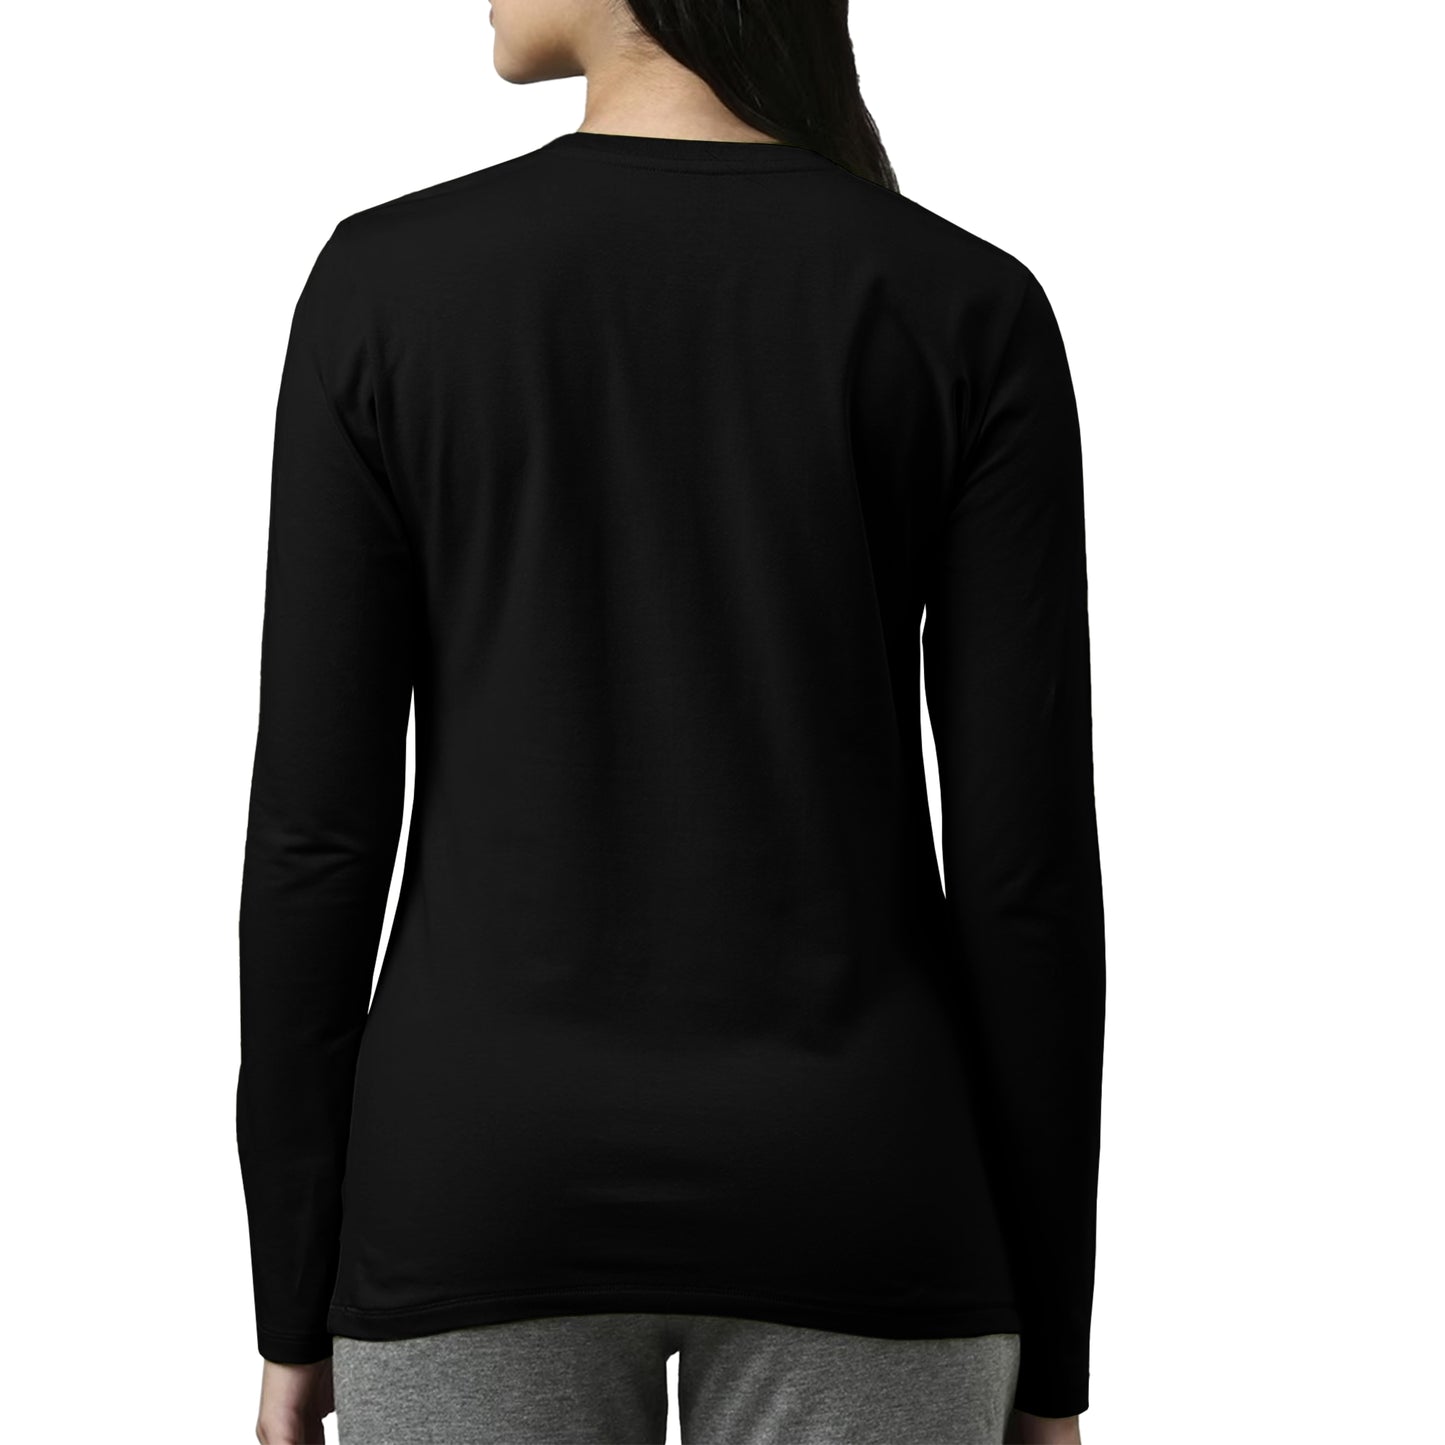 Black Full Sleeves For Women - FlyingCart.pk